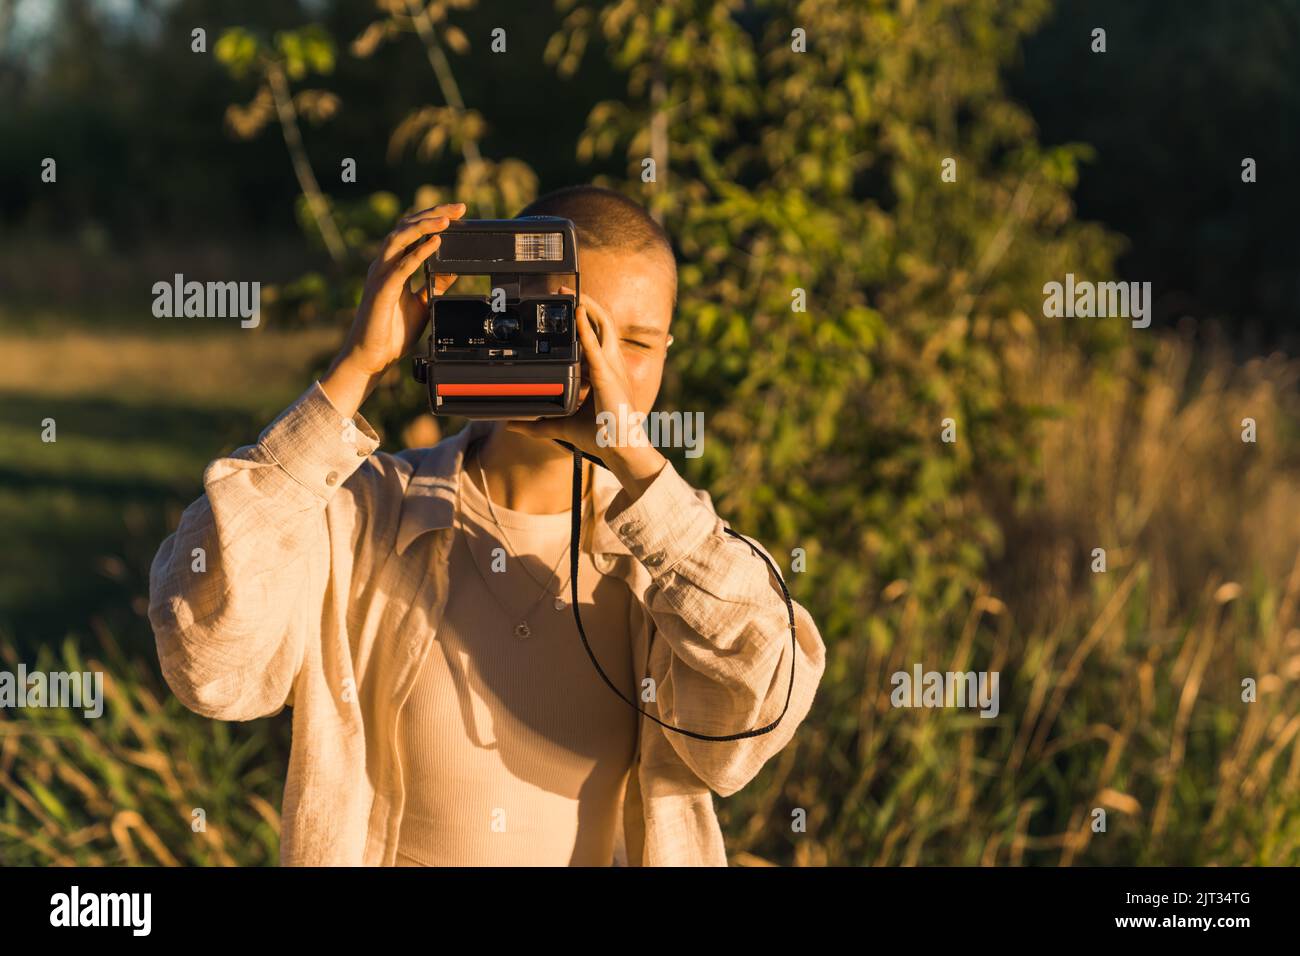 Ein junges kaukasisches modernes Mädchen, das mit einer einstufigen polaroid-Spritzkamera Fotos von der beeindruckenden Aussicht einfangen kann. Naturliebhaber genießen den Sonnenuntergang im Sommer. Hochwertige Fotos Stockfoto